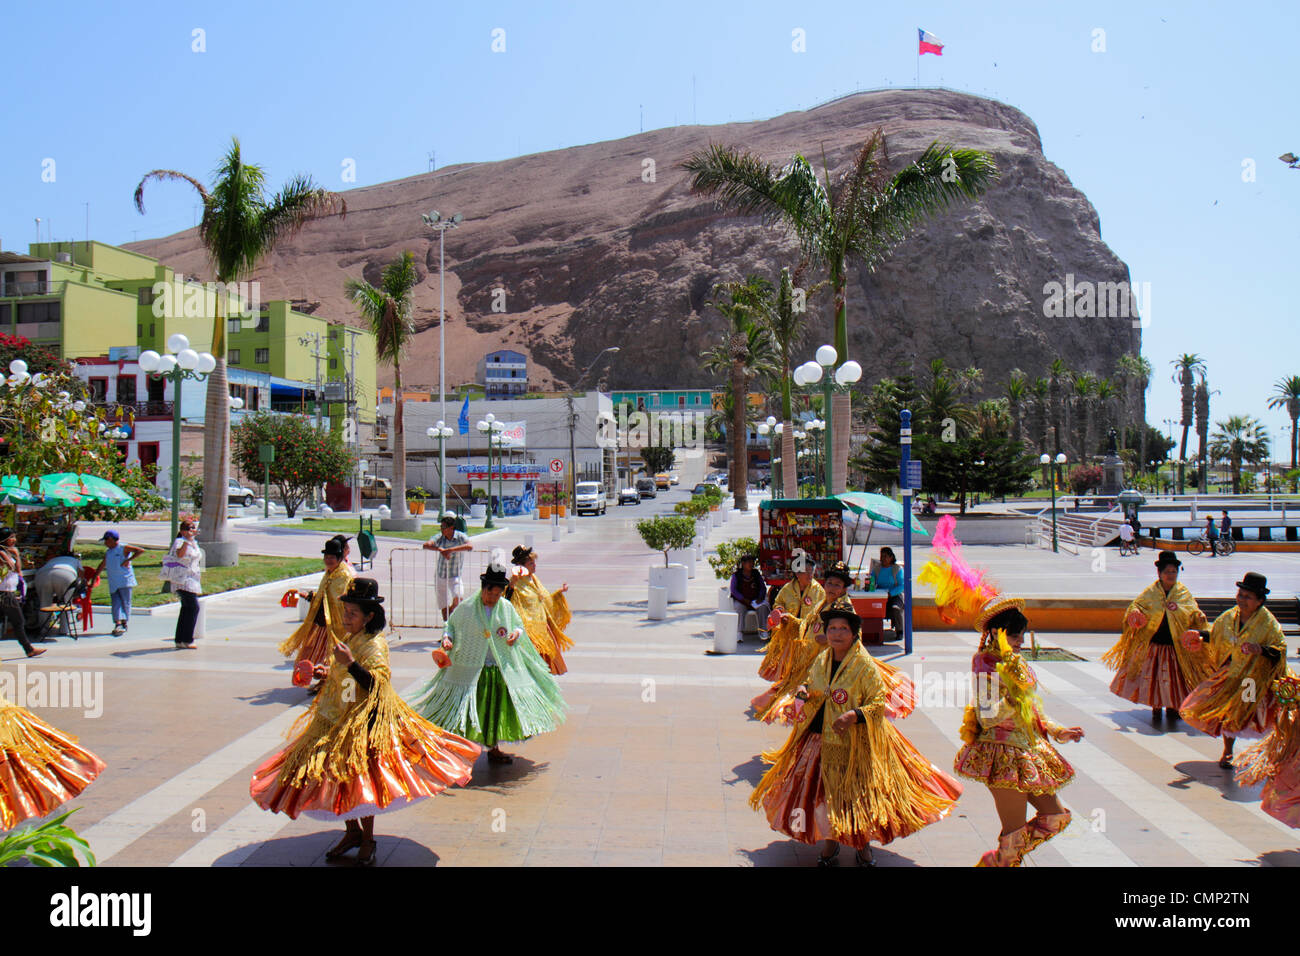 Arica Chile,Plaza Colon,El Morro de Arica,rock,Carnaval Andino,Carnevale andino,sfilata,indigena,Aymara Heritage,folklore danza tradizionale,troupe,His Foto Stock